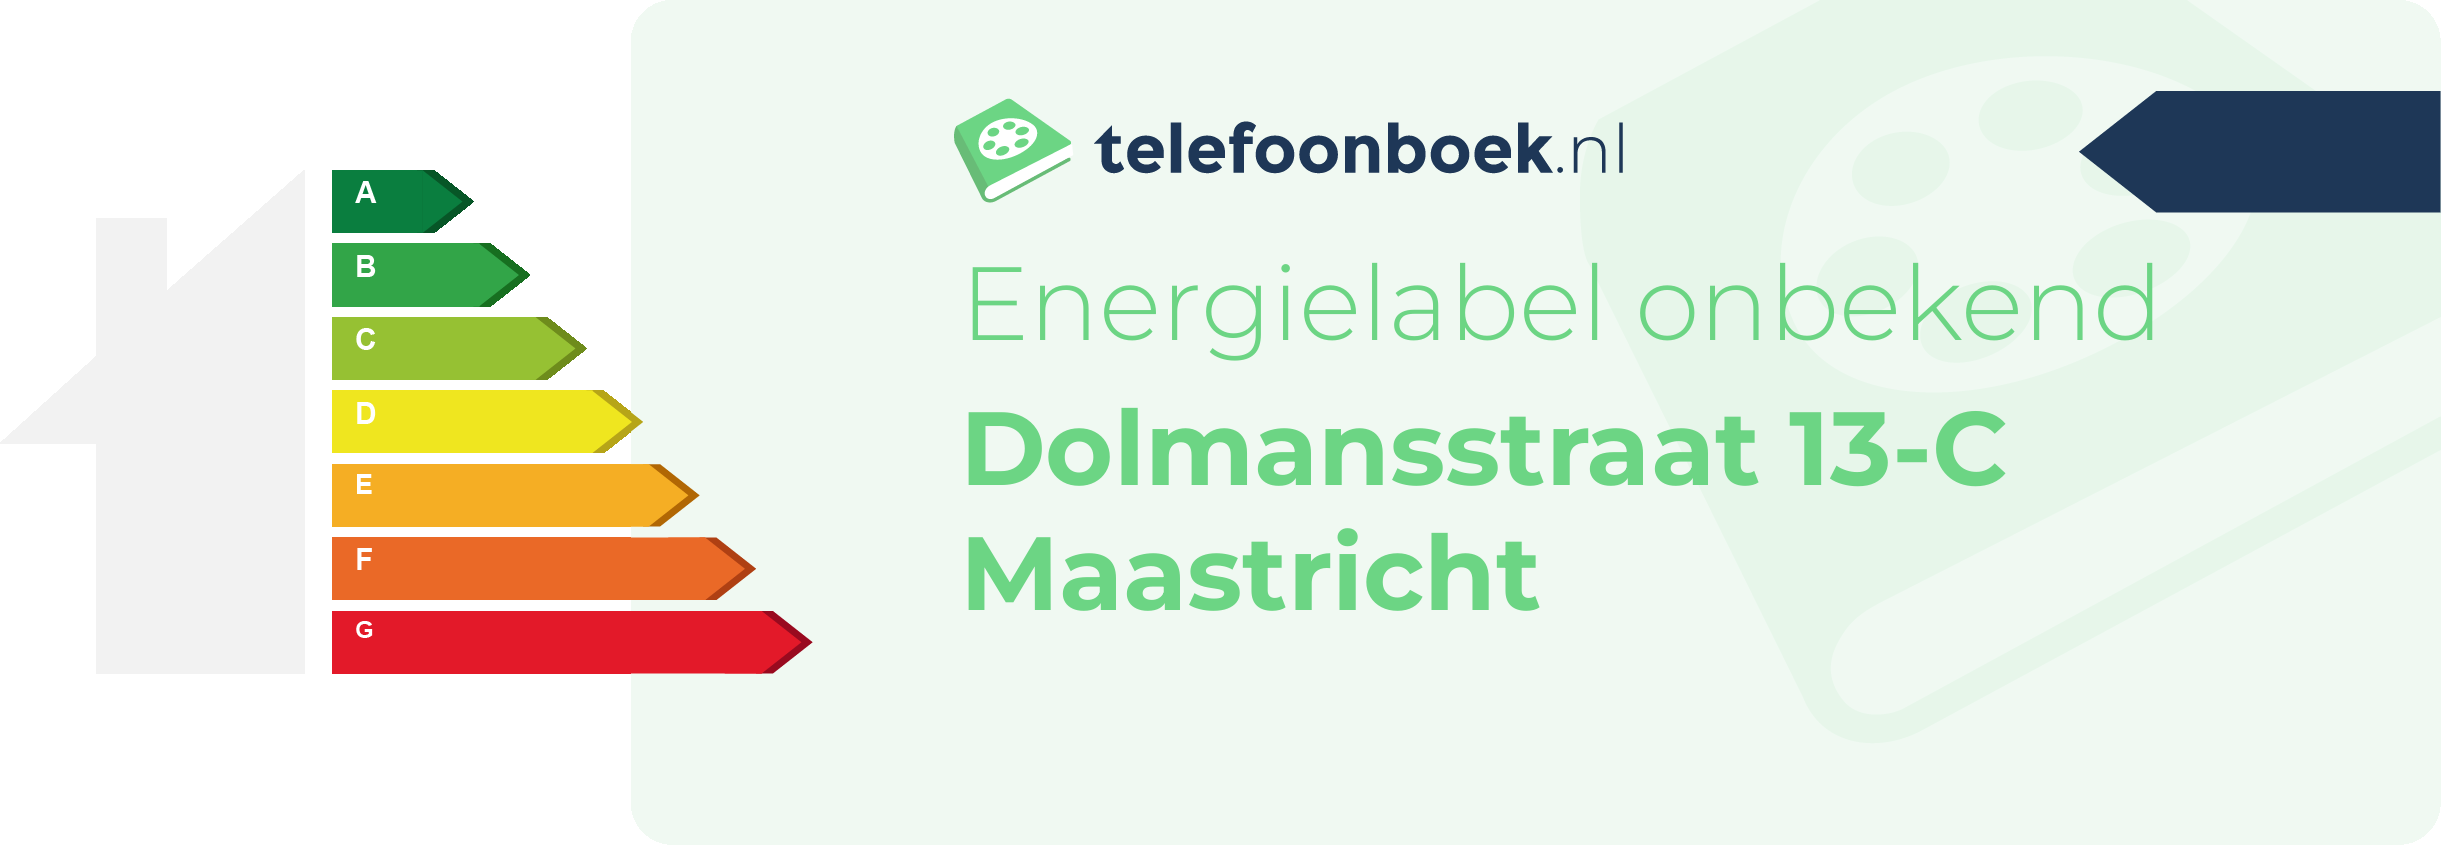 Energielabel Dolmansstraat 13-C Maastricht